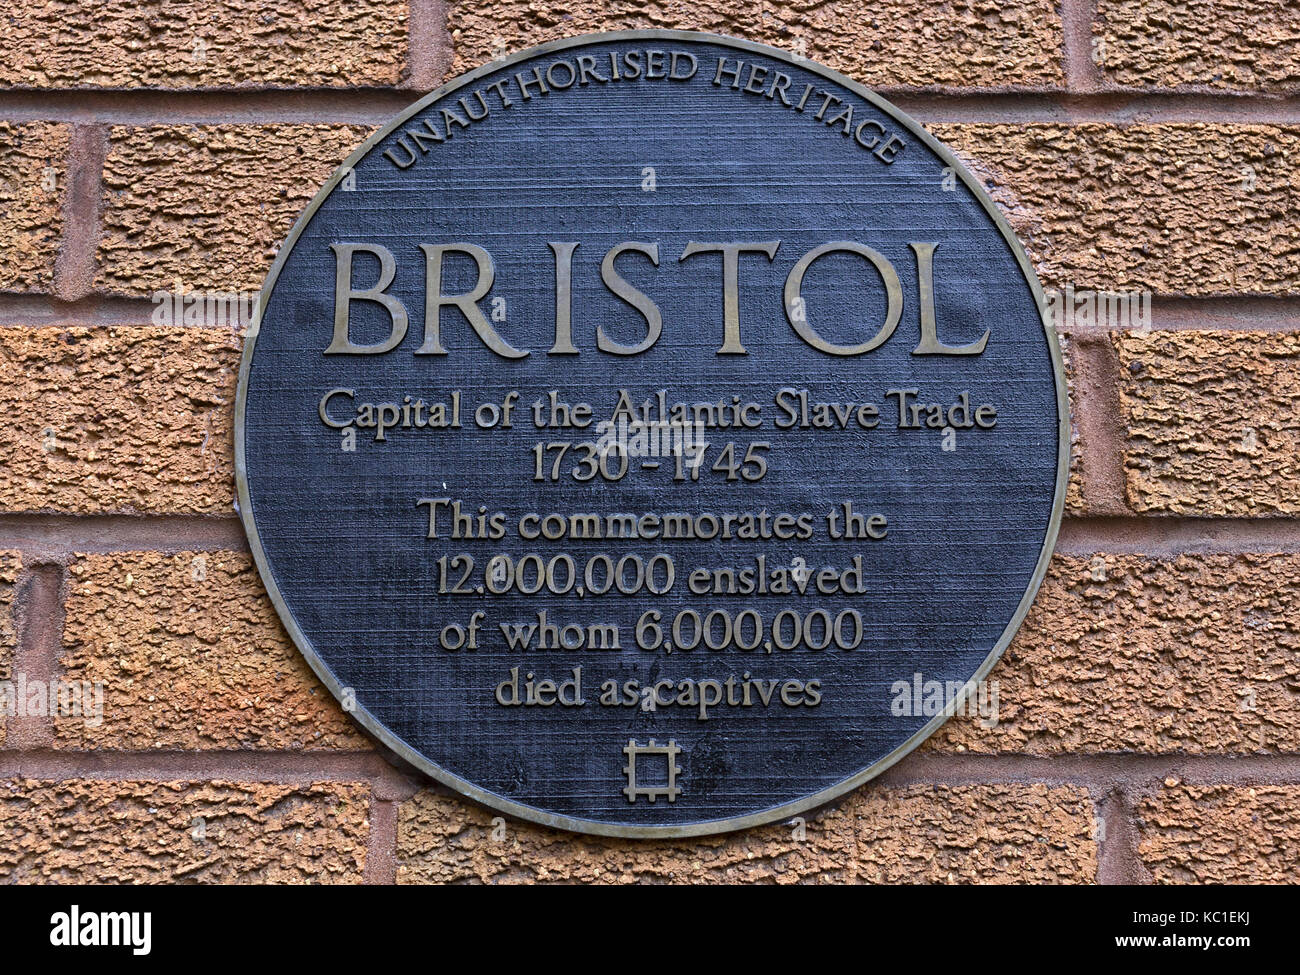 Una targa dell’artista, la onorevole Coles, segna il coinvolgimento di Bristol nel commercio degli schiavi dell’Atlantico. È simile a quella posta su una statua di Edward Colston. Foto Stock